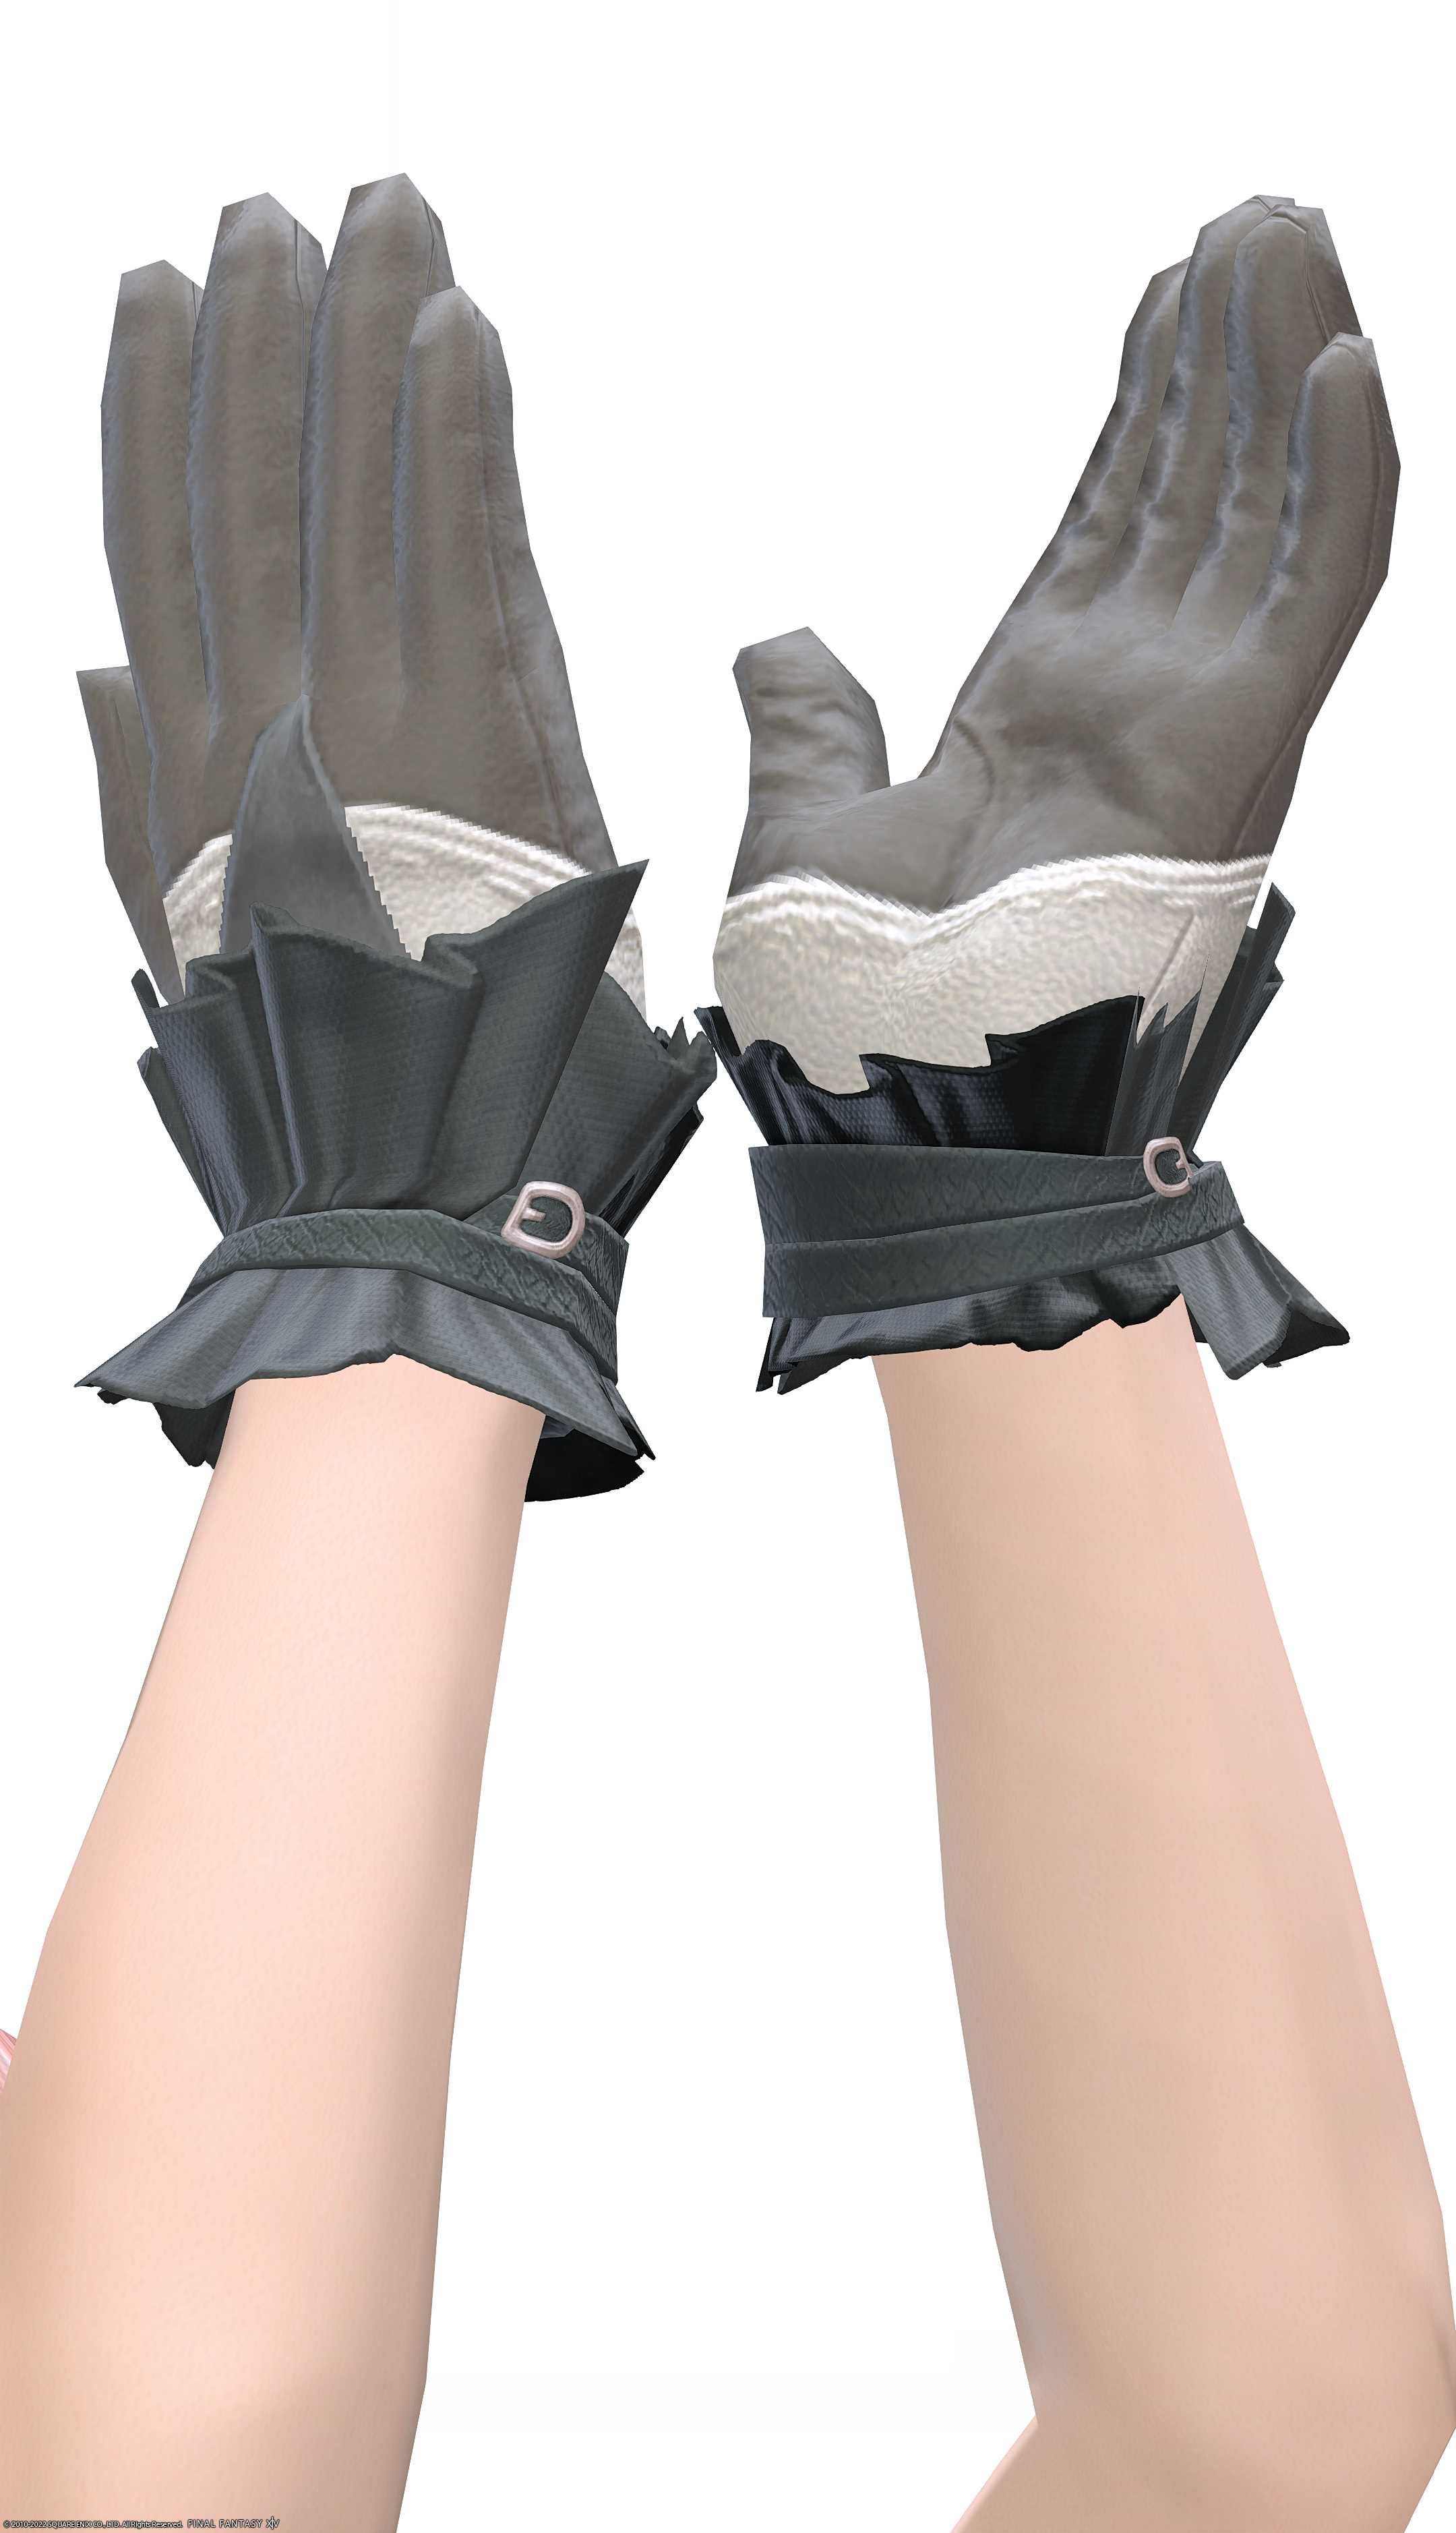 フッブート・キャスターグローブ | FF14ミラプリ - Voeburtite Gloves of Casting - 手袋/グローブ